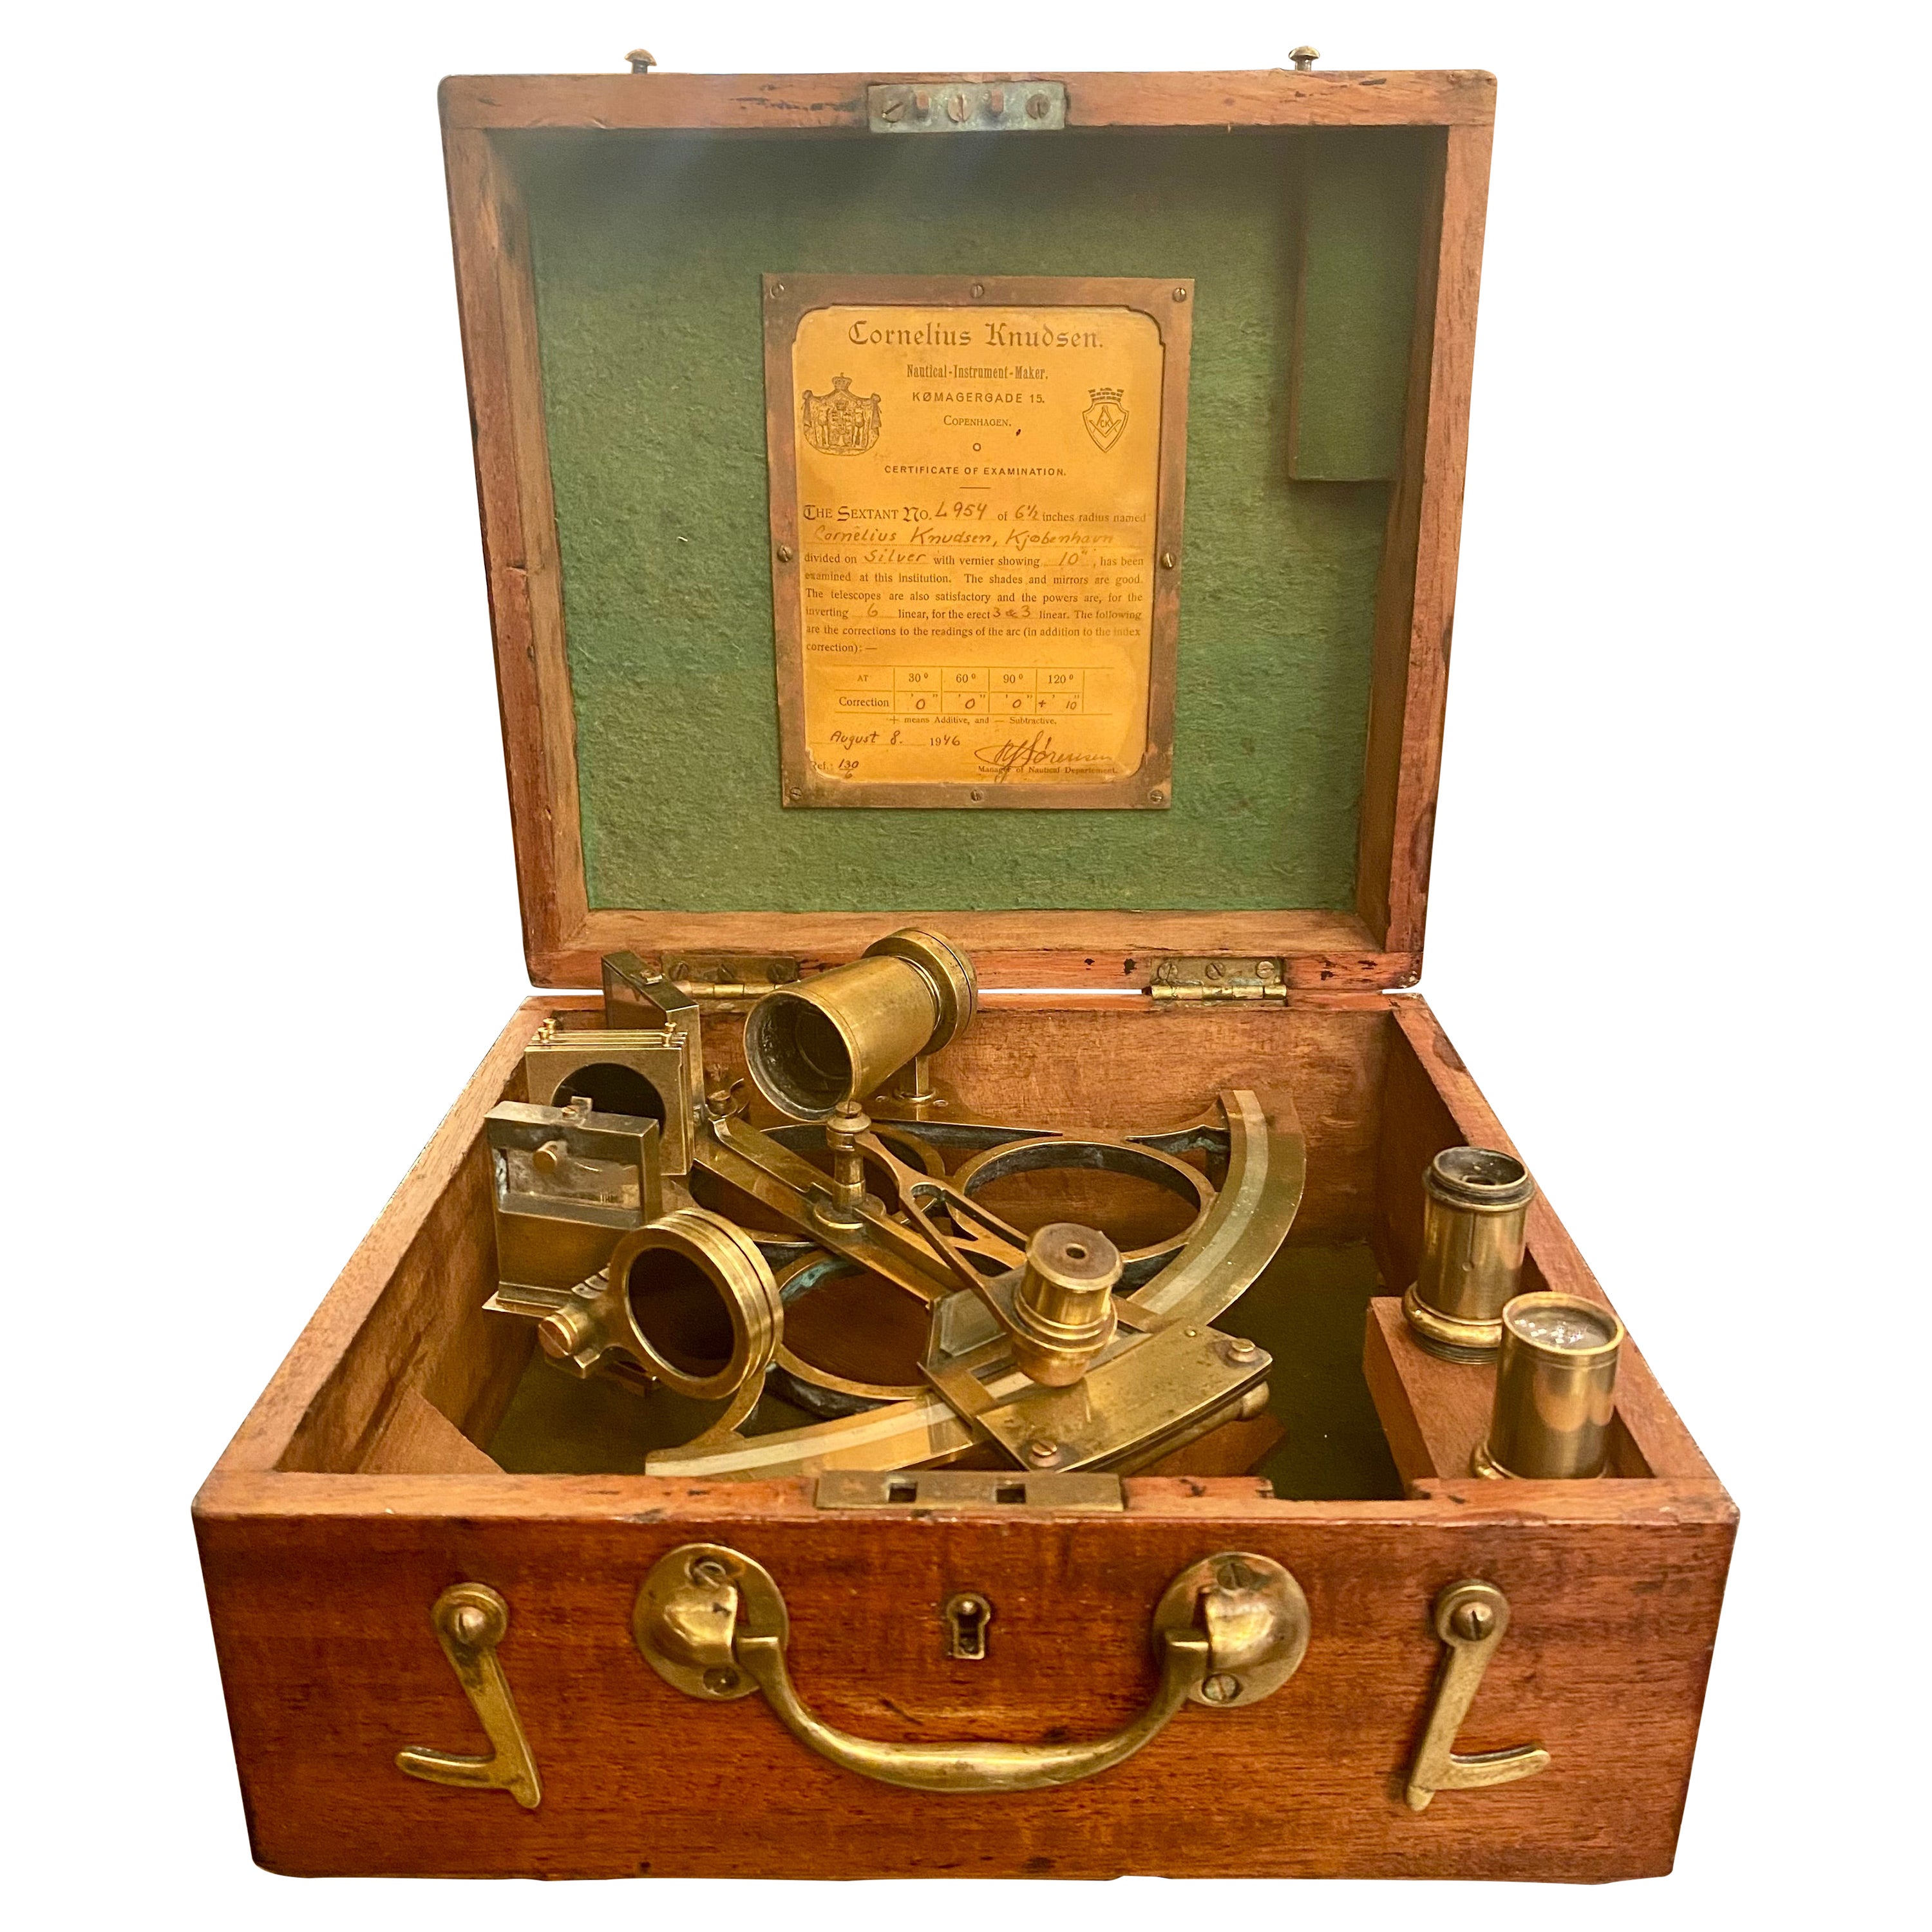 Antique Danish "Cornelius Knudsen" Navigation Sextant in Original Fitted Box